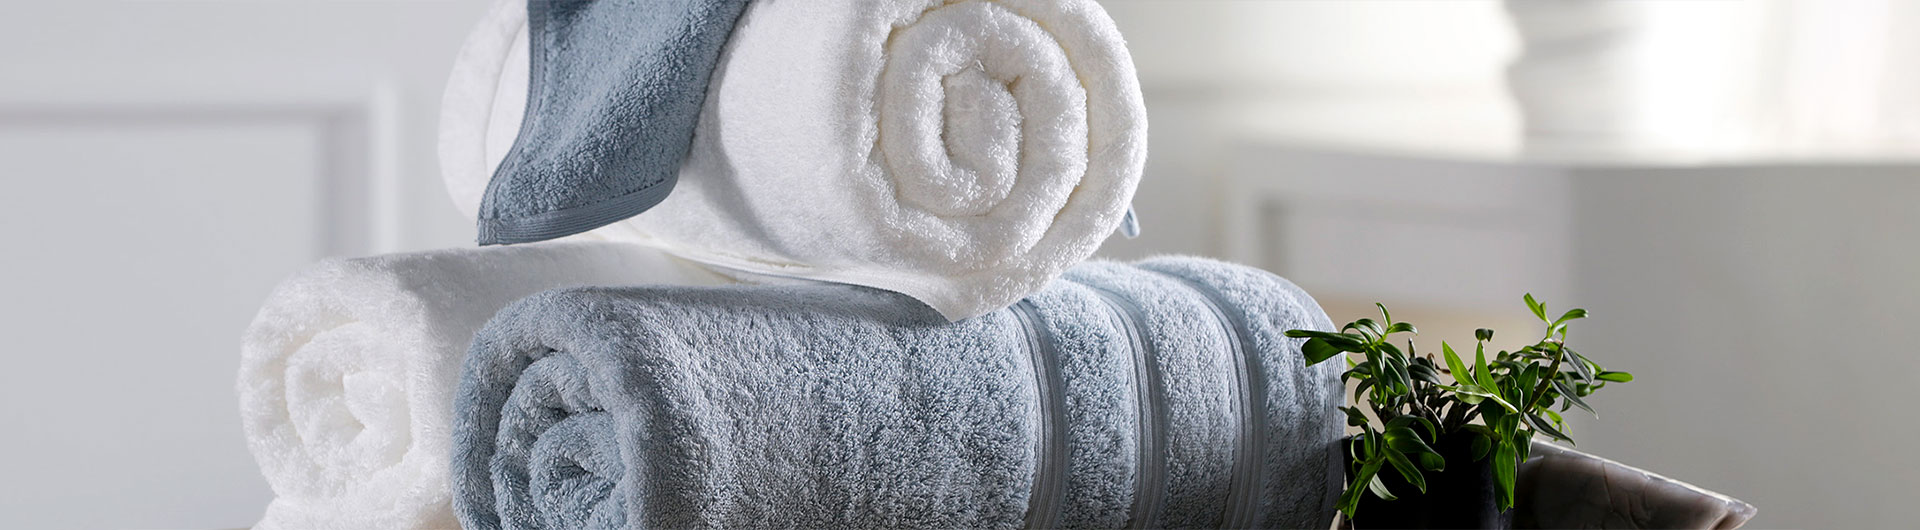 Notas de lavado para toalla de hotel de algodón puro y albornoz 1